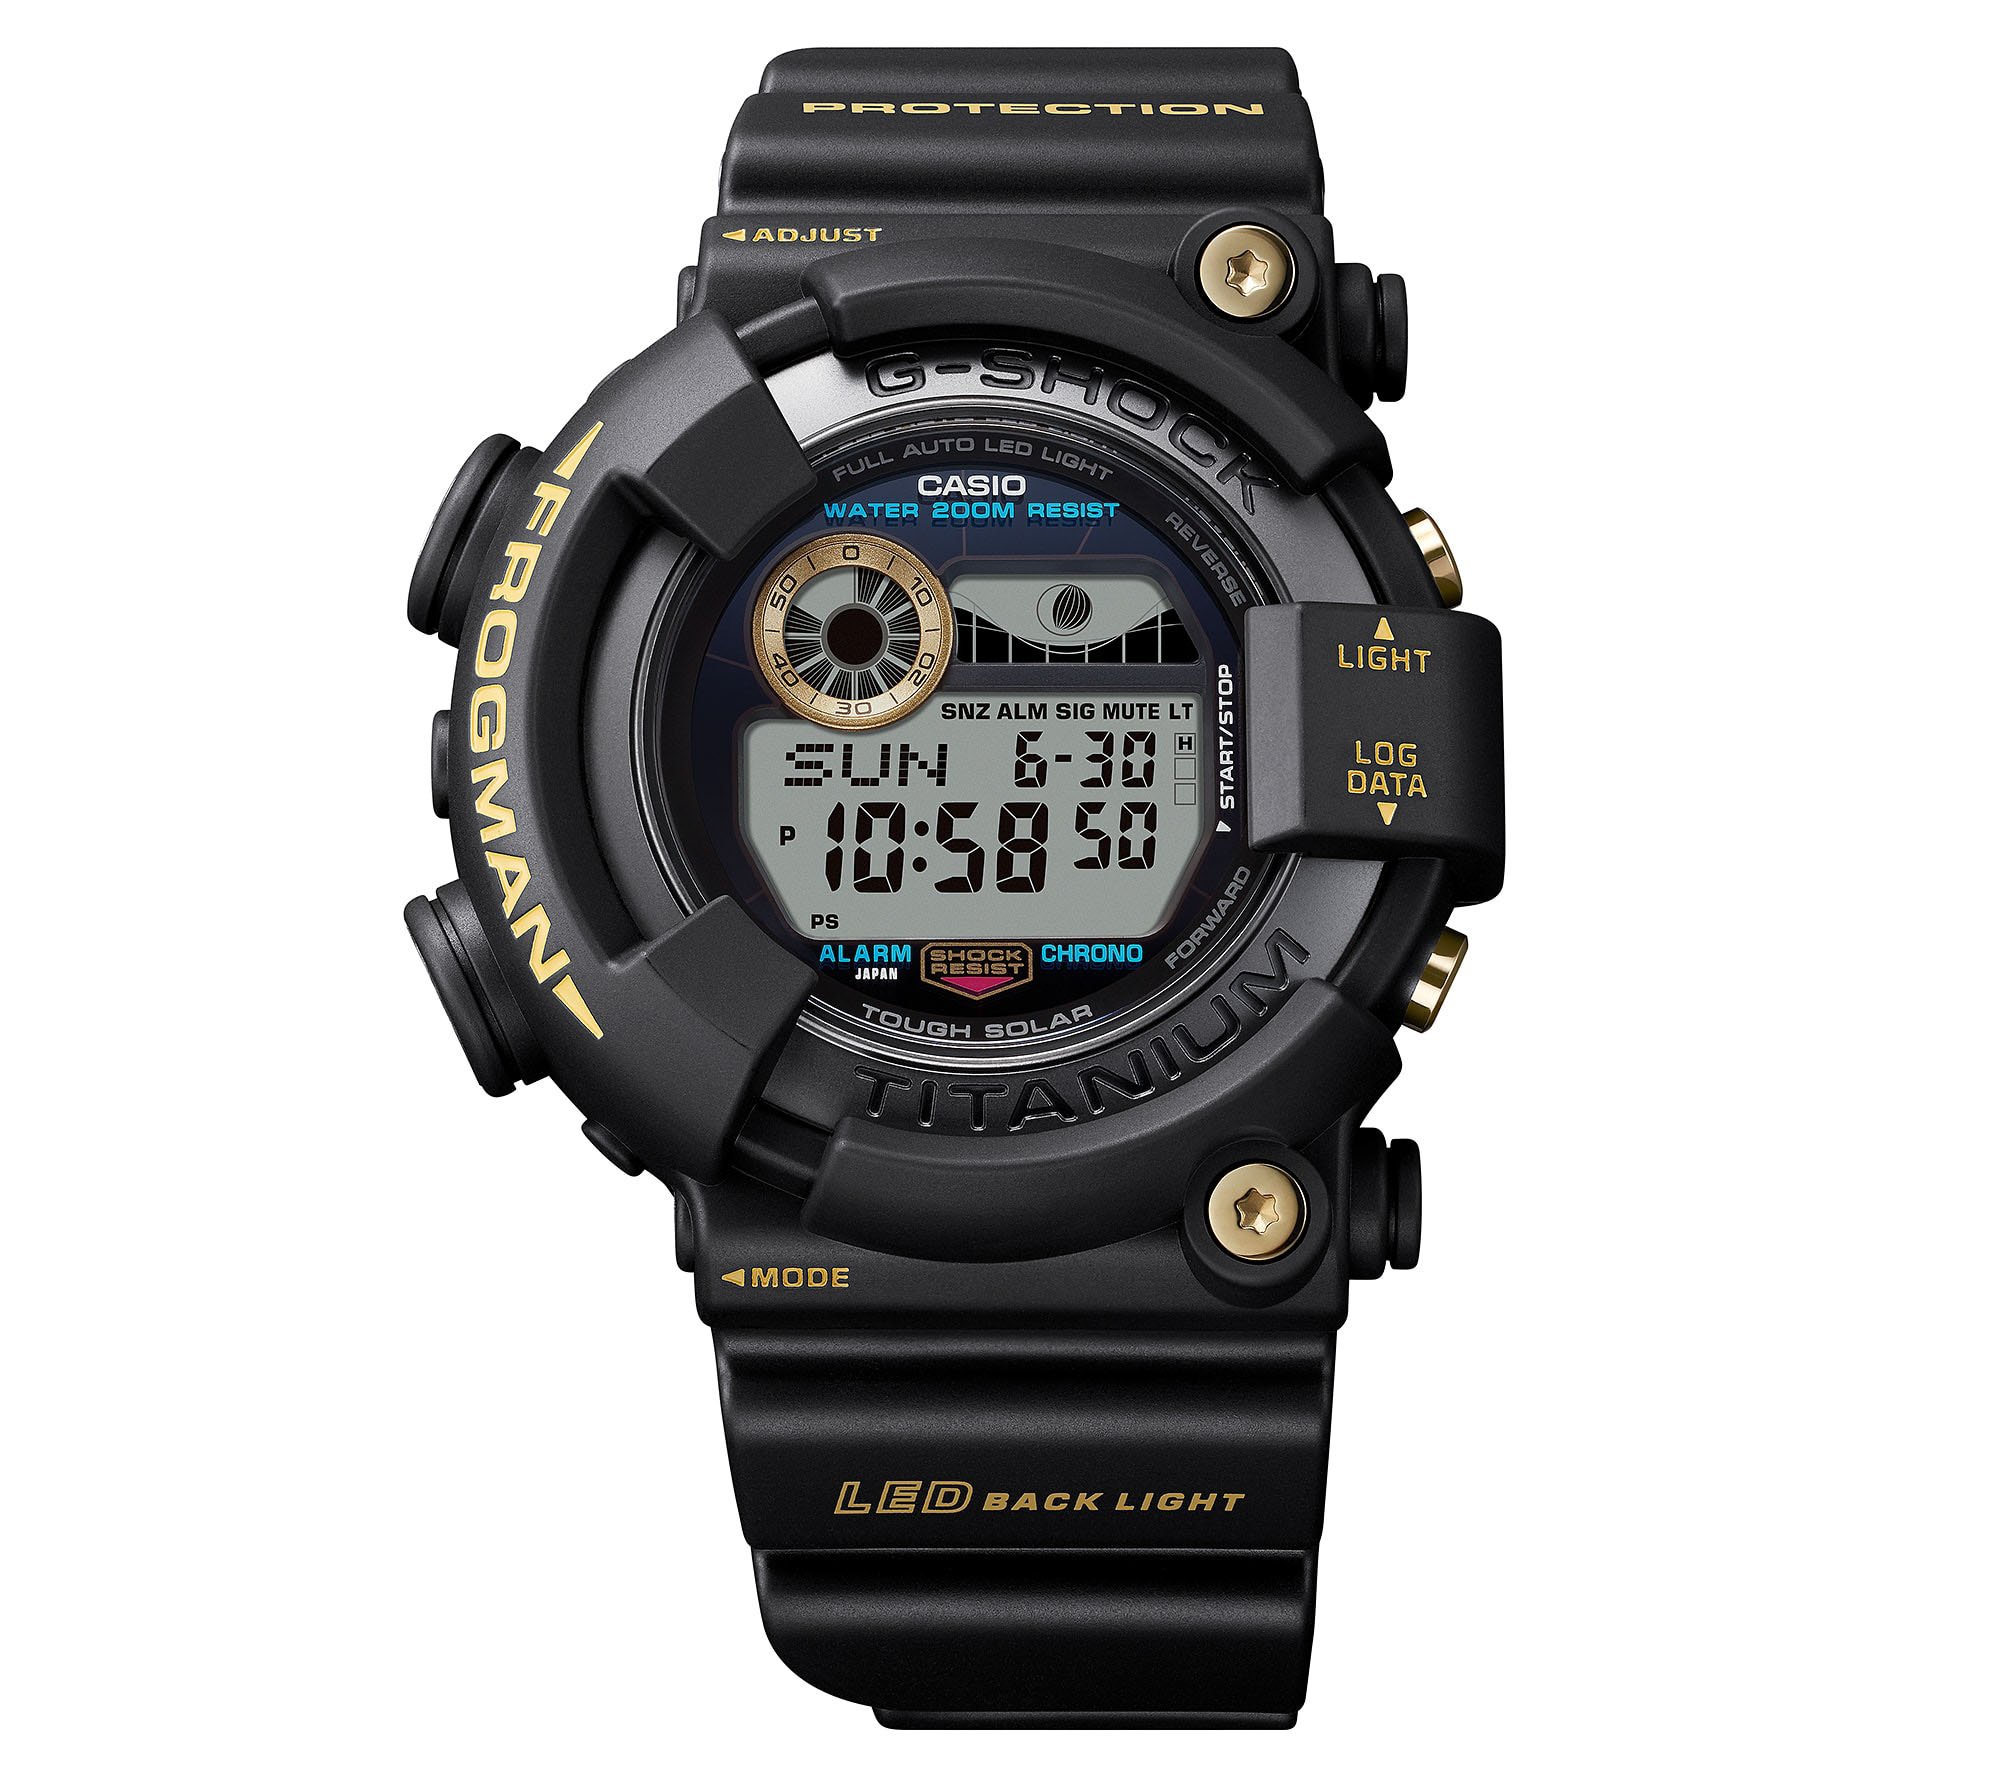 Casio представляет часы для дайвинга G-Shock Frogman GW8230B, посвященные 30-летию со дня выпуска